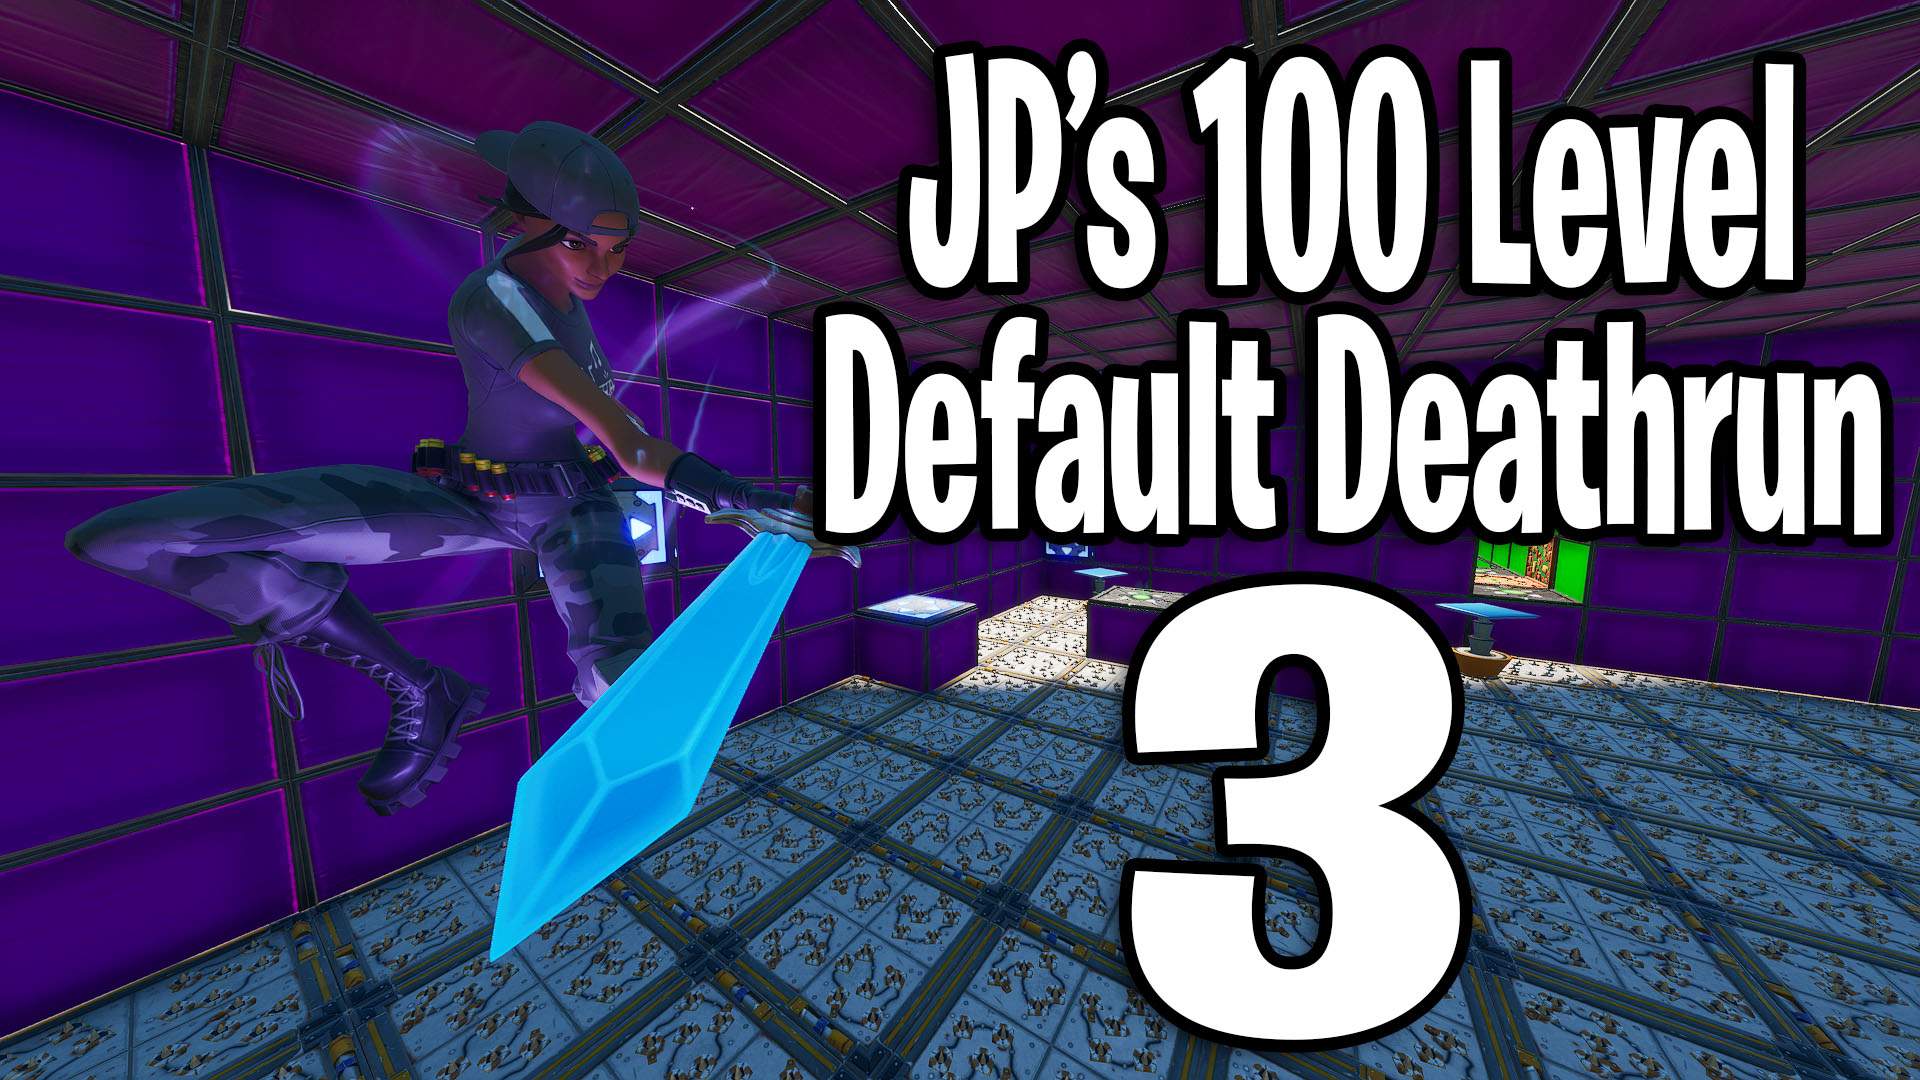 JP'S 100 LEVEL DEFAULT DEATHRUN 3